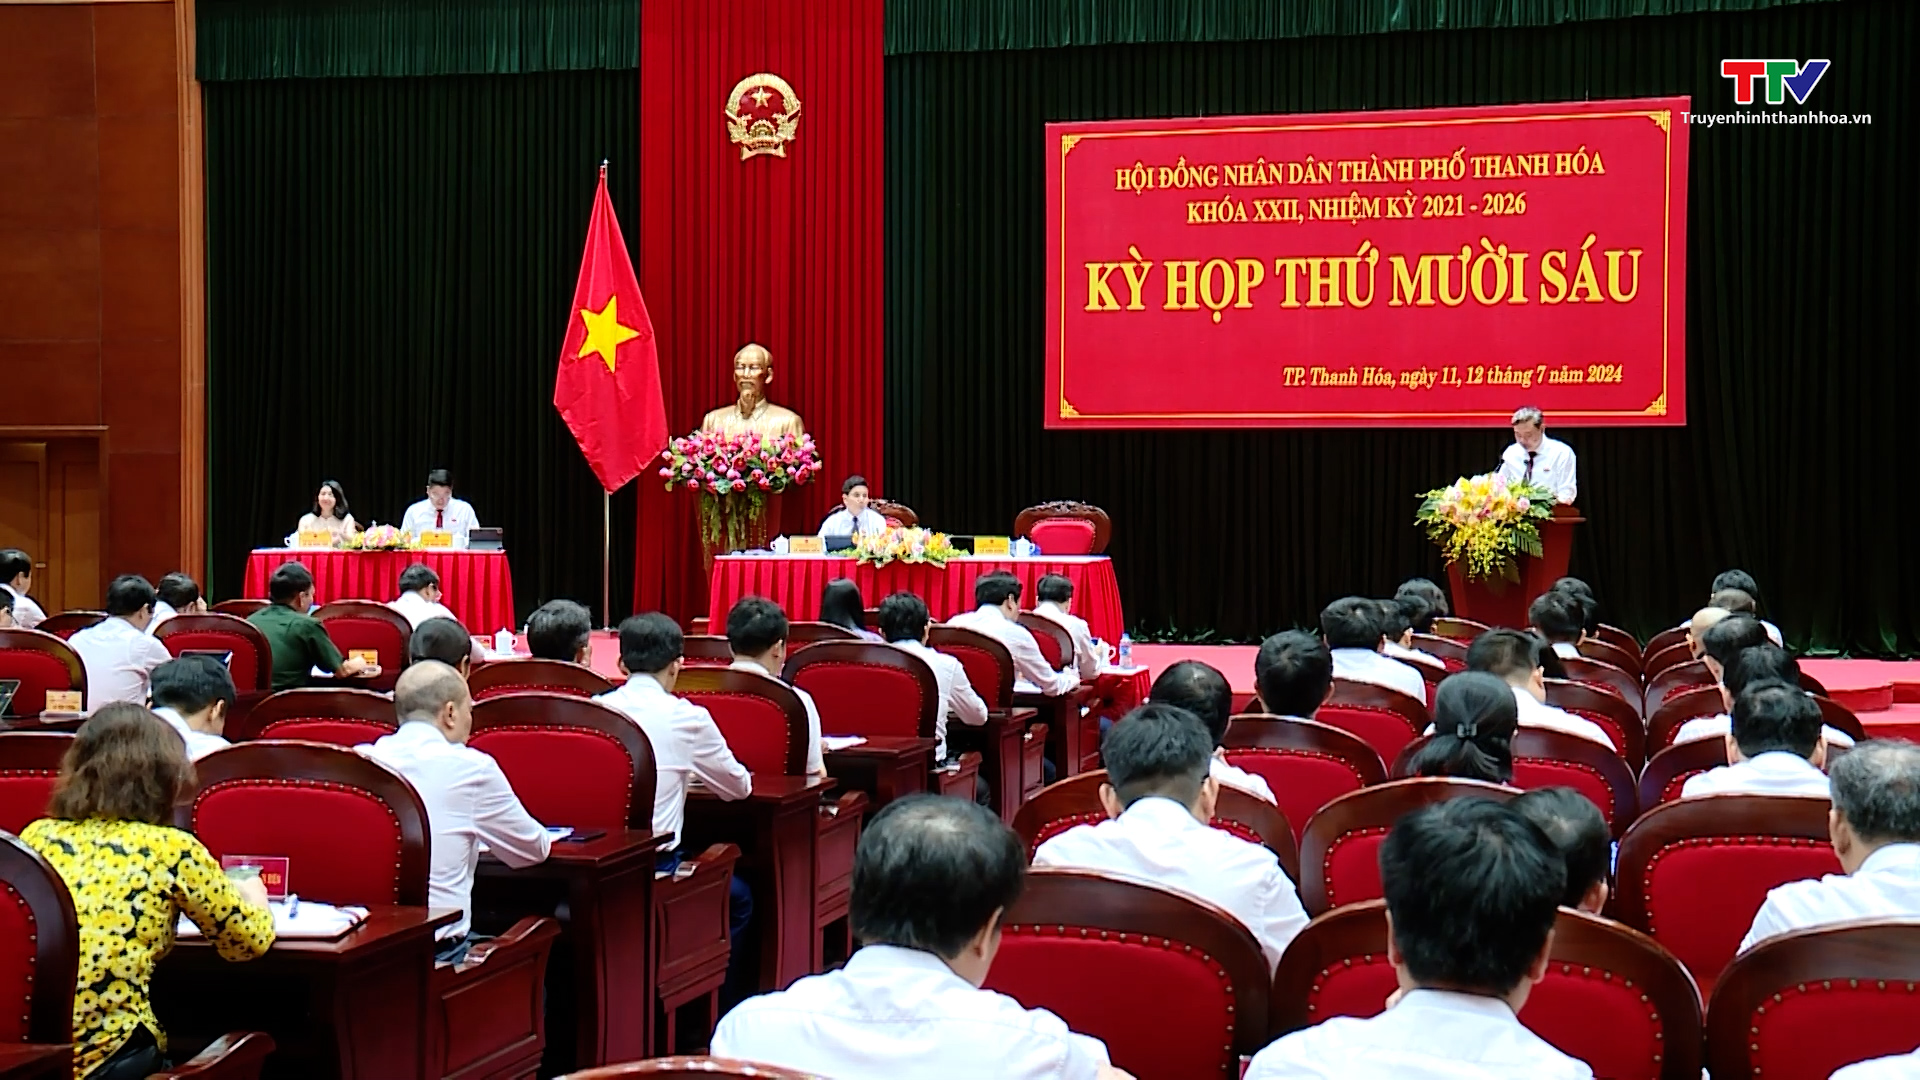 Kỳ họp thứ mười sáu, Hội đồng Nhân dân thành phố Thanh Hoá khoá XXII, nhiệm kỳ 2021 - 2026
- Ảnh 1.